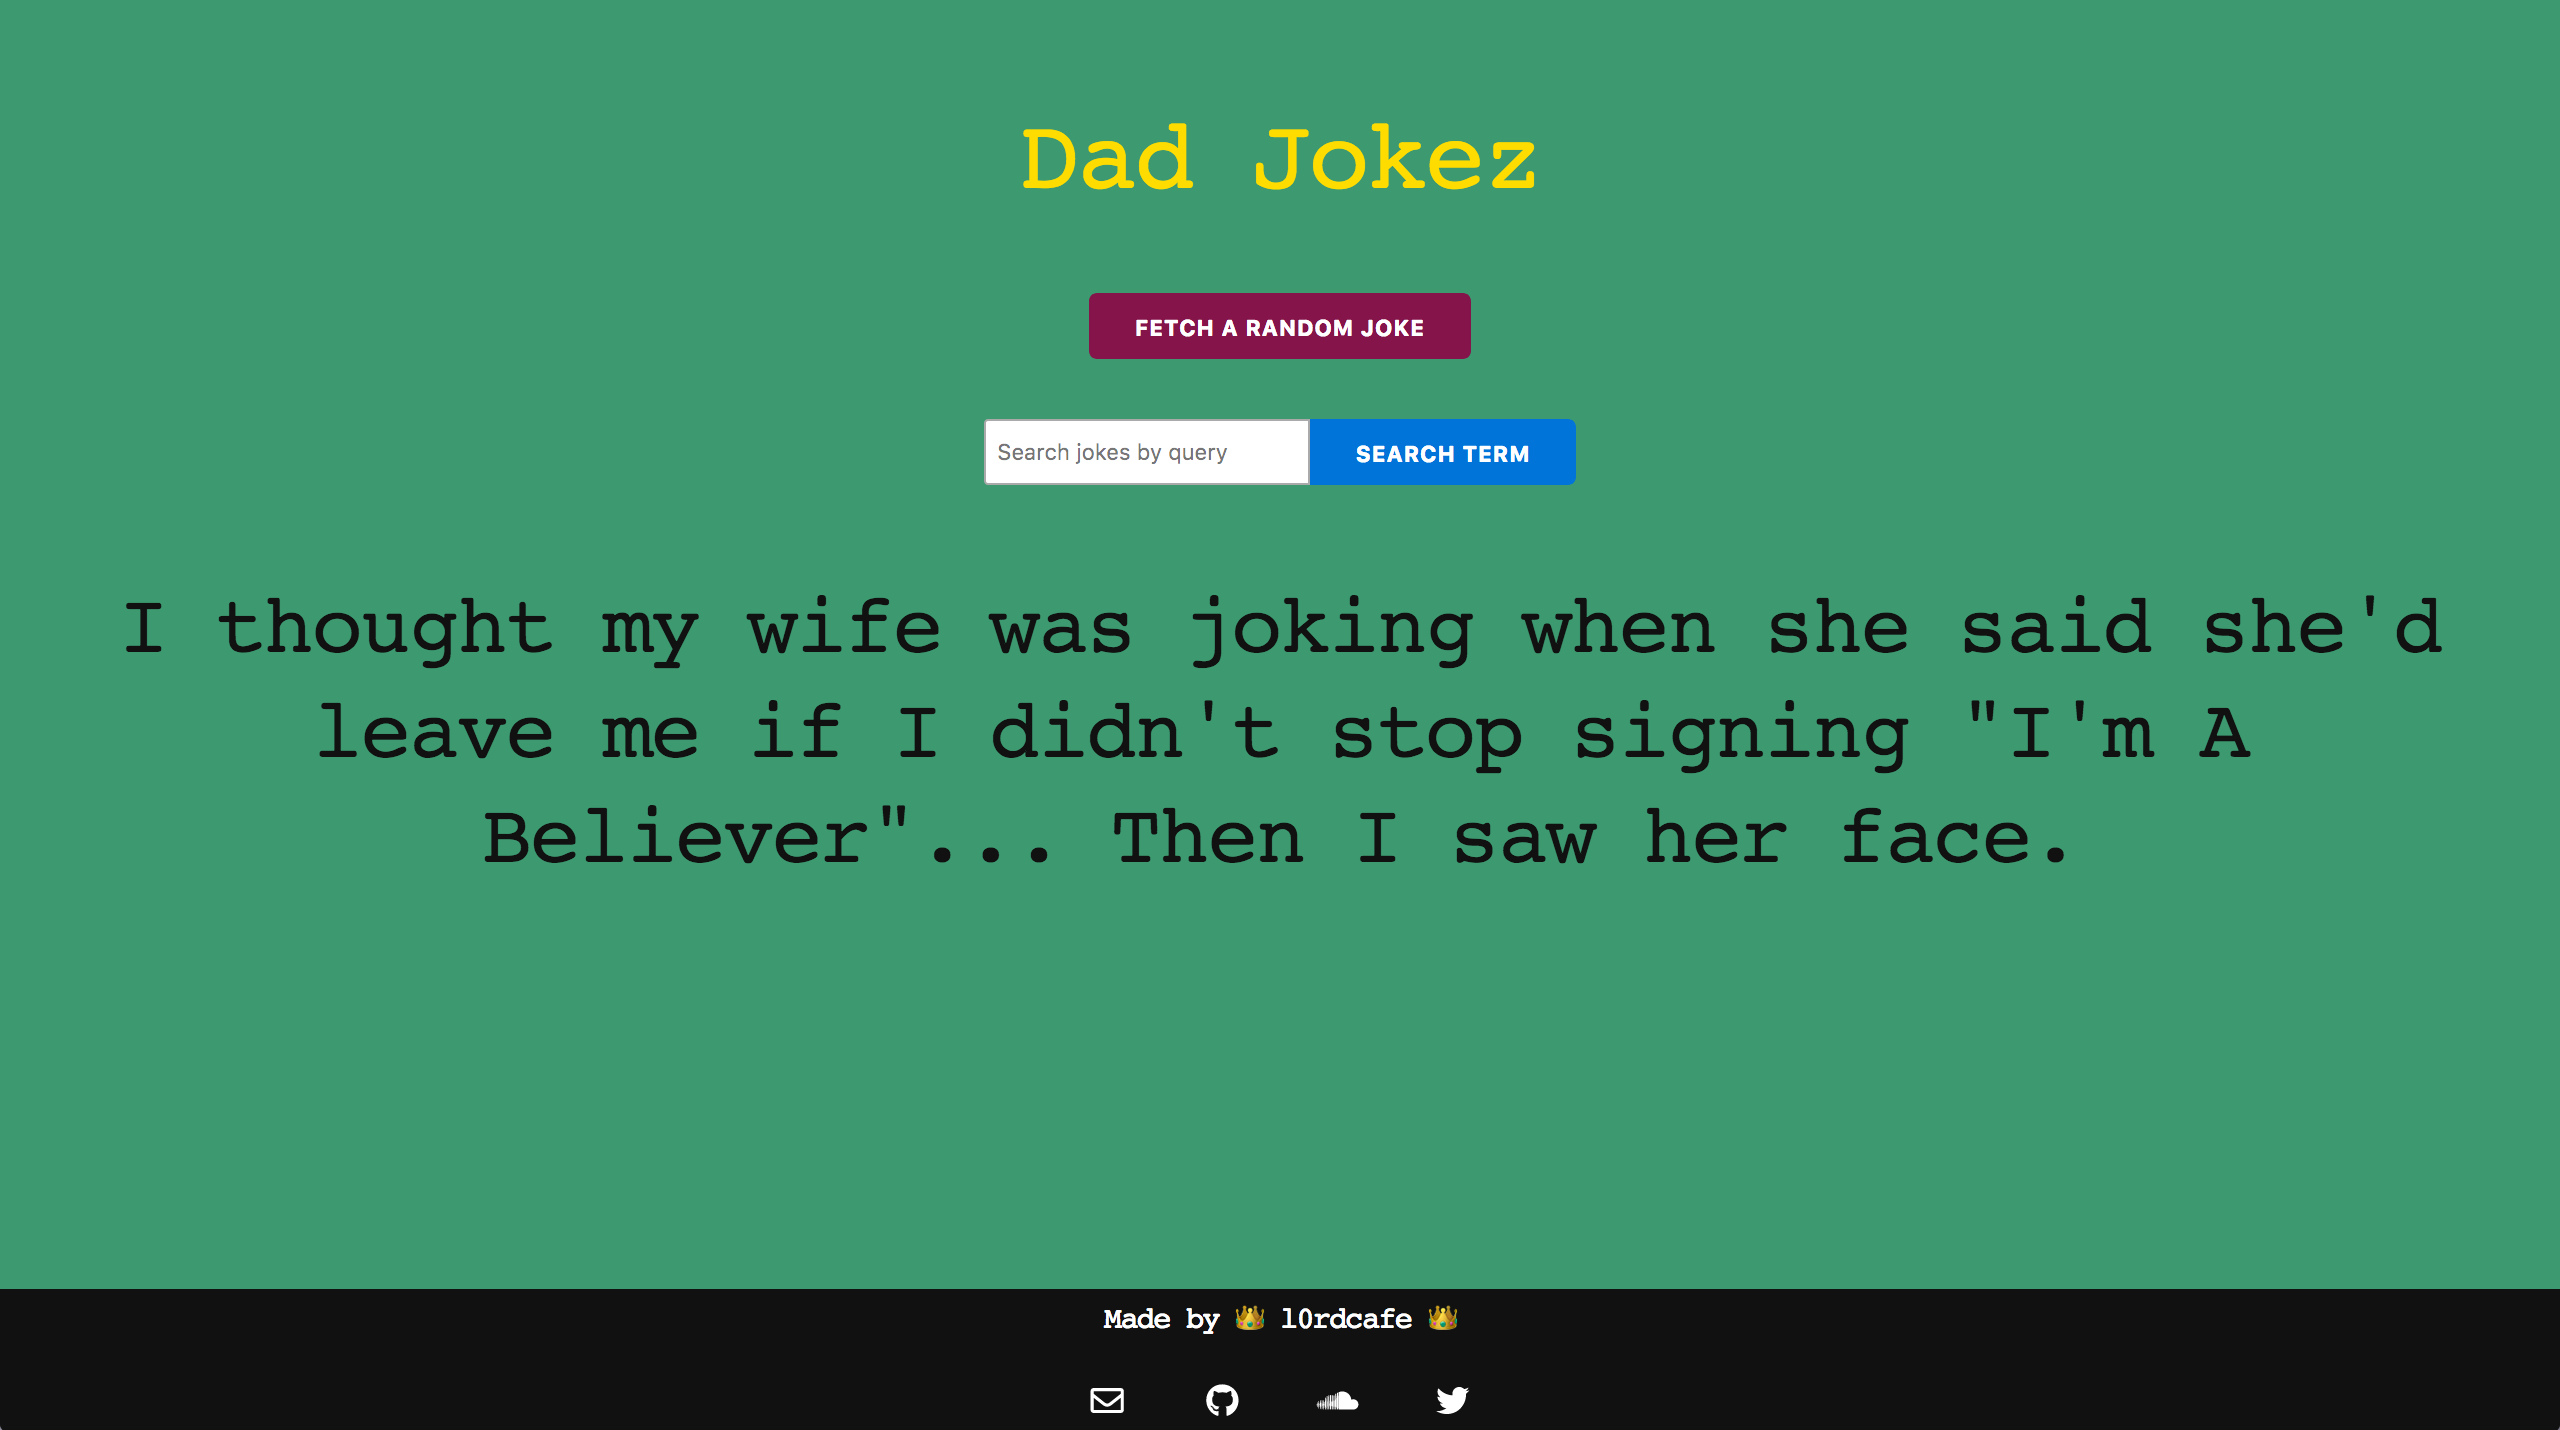 Dad joke app showing random joke and search field